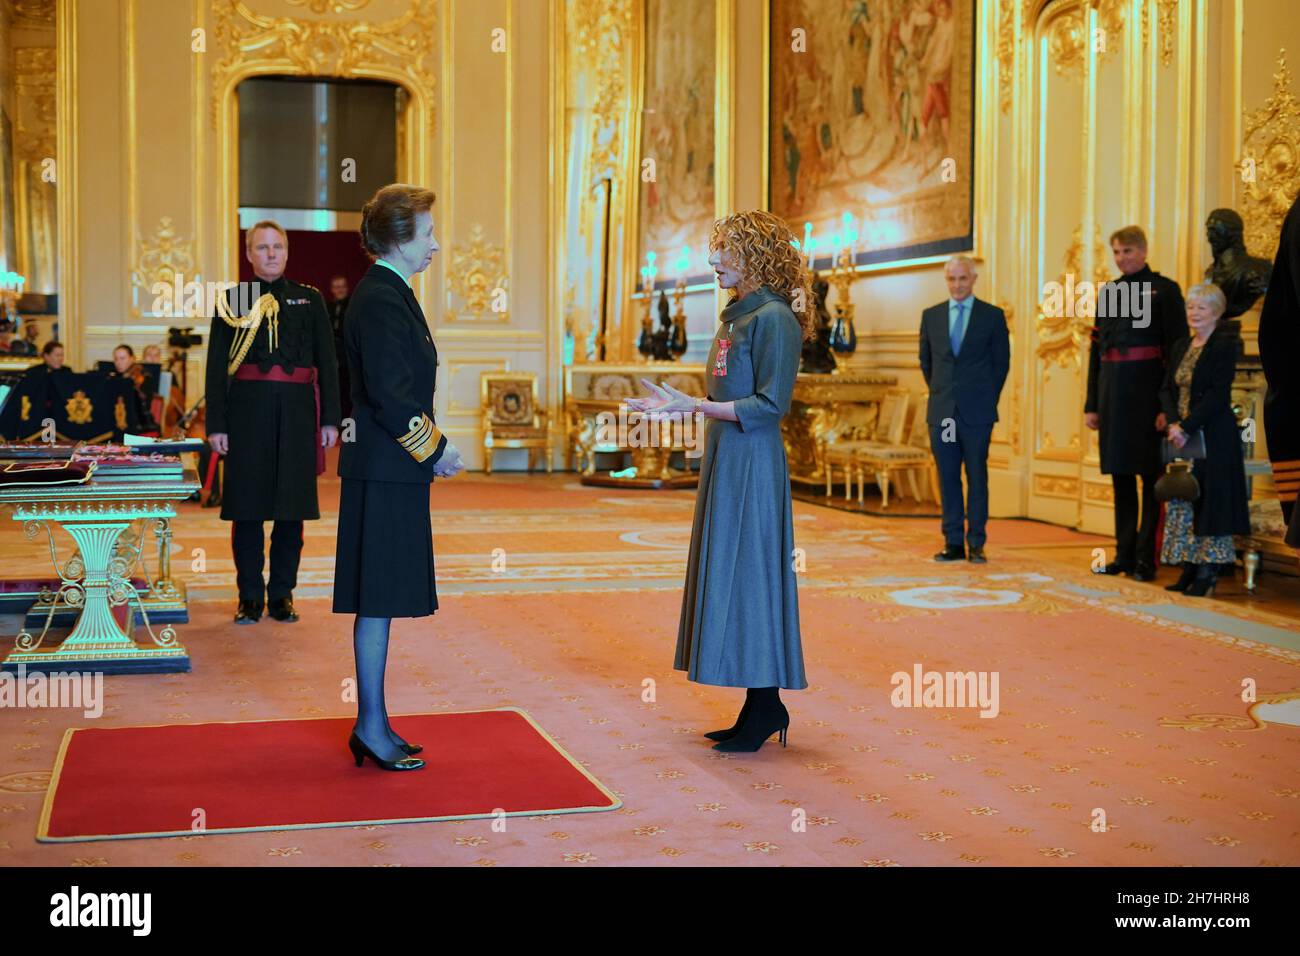 Kelly Hoppen, de Londres, est fait CBE (commandant de l'ordre de l'Empire britannique) par la princesse Royal au château de Windsor.Date de la photo: Mardi 23 novembre 2021. Banque D'Images